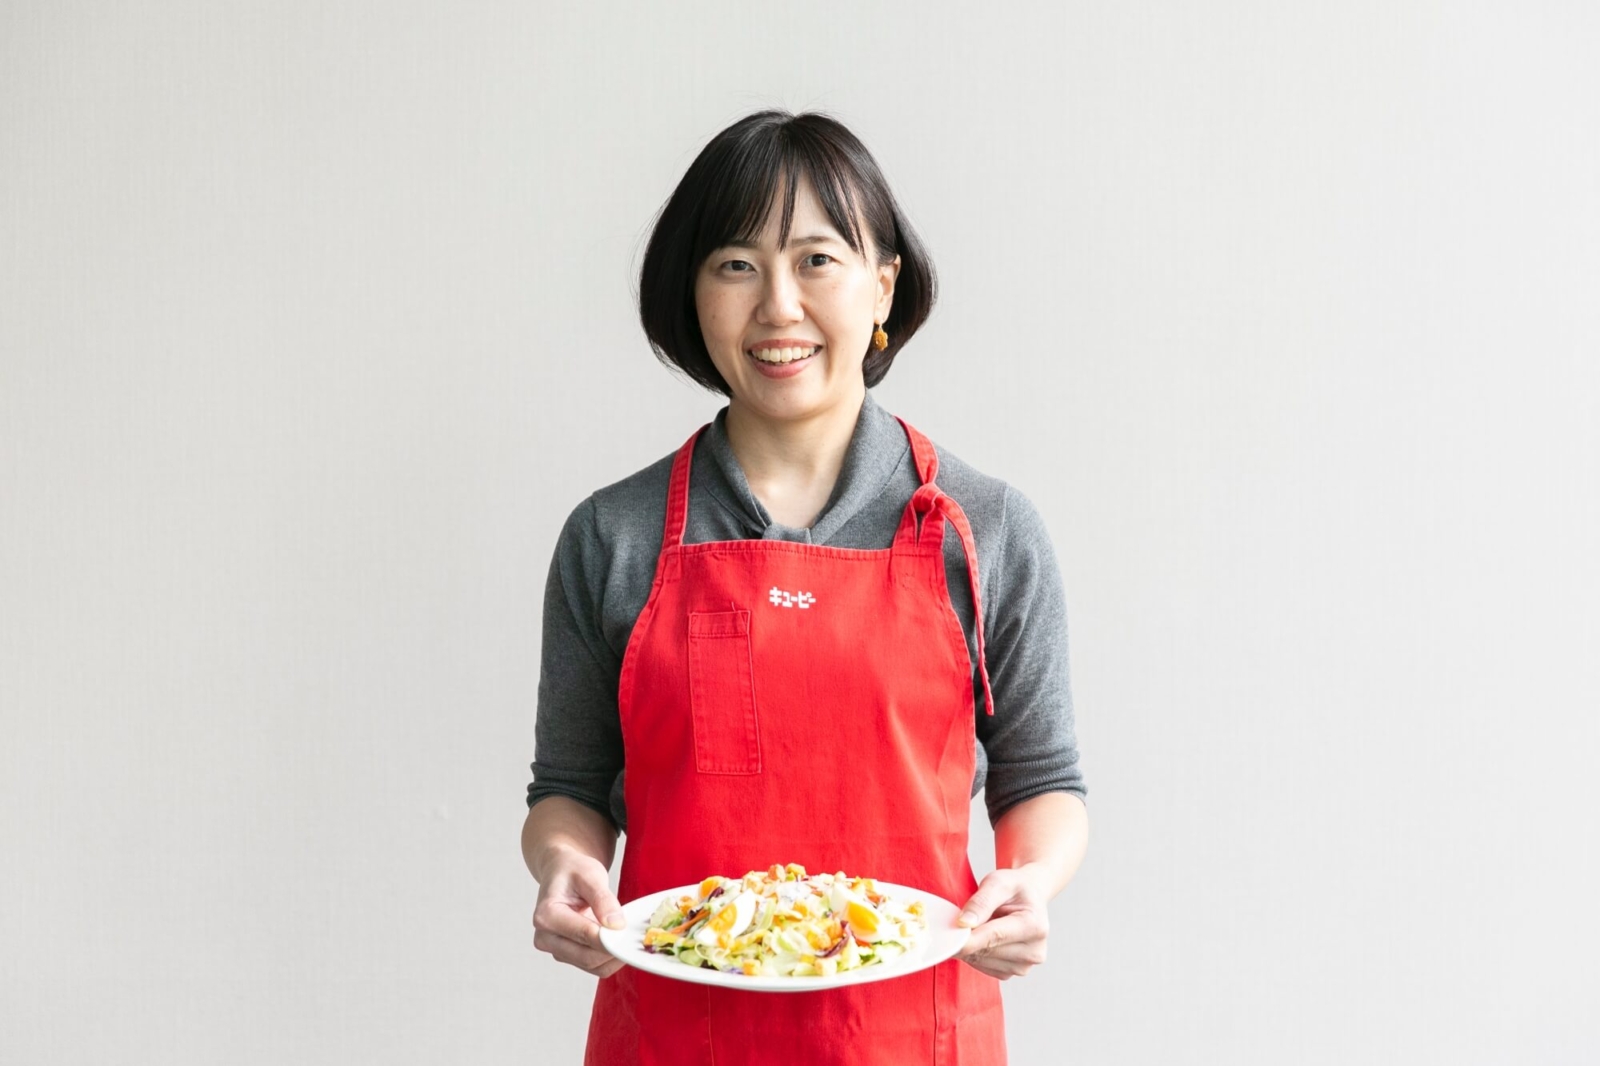 「Qummy 10品目野菜のシーザーサラダ」を持つキユーピー株式会社の小林さん